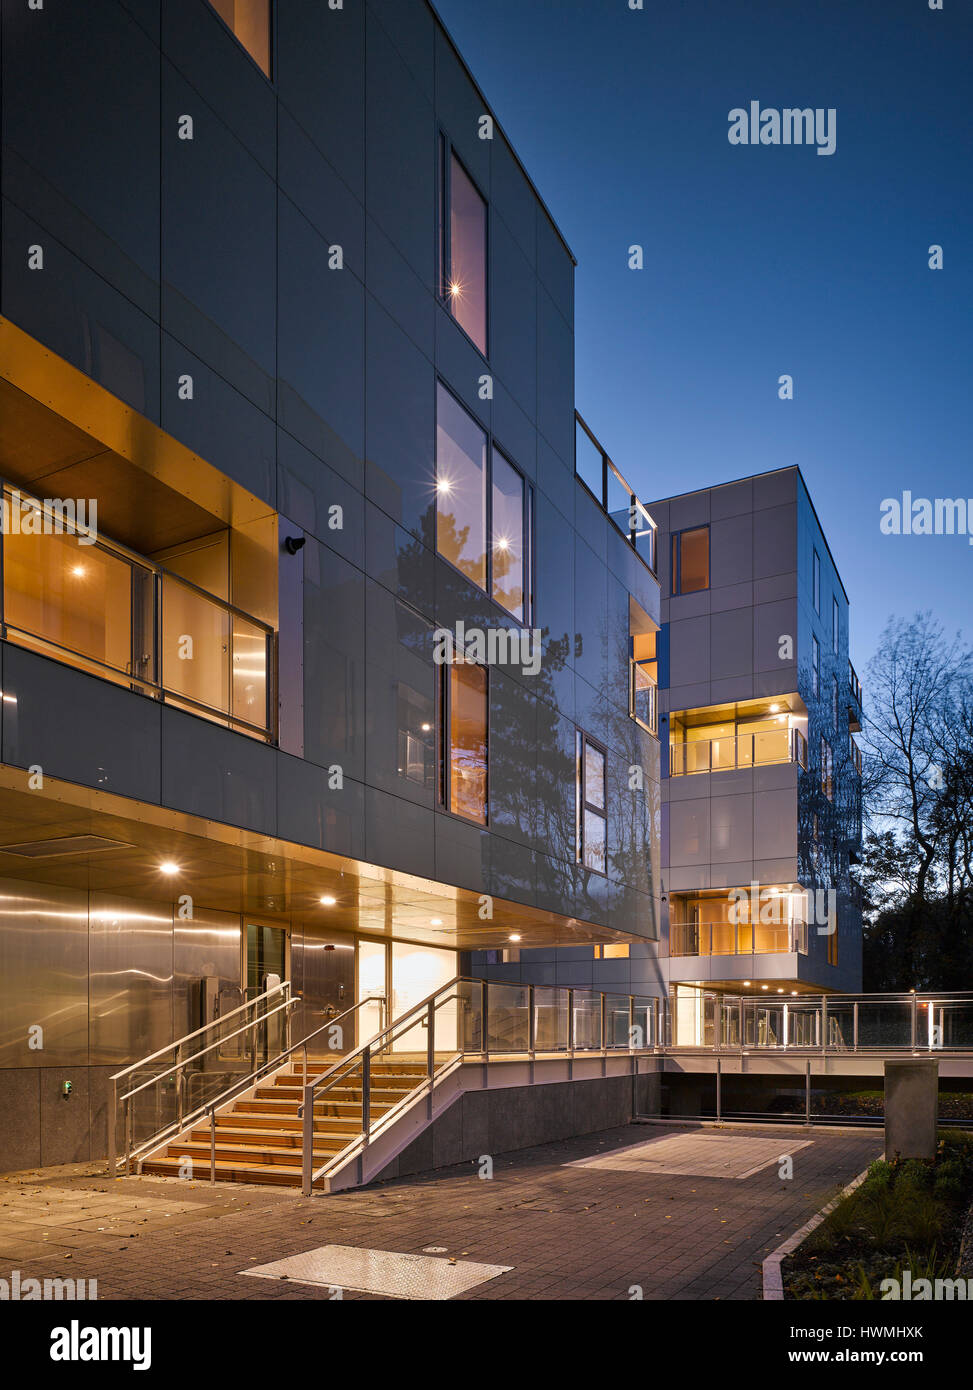 Abenddämmerung Blick von außen zeigt Treppe und Gehweg. Dunluce Apartments, Ballsbridge, Irland. Architekt: Derek Tynan Architekten, 2016. Stockfoto